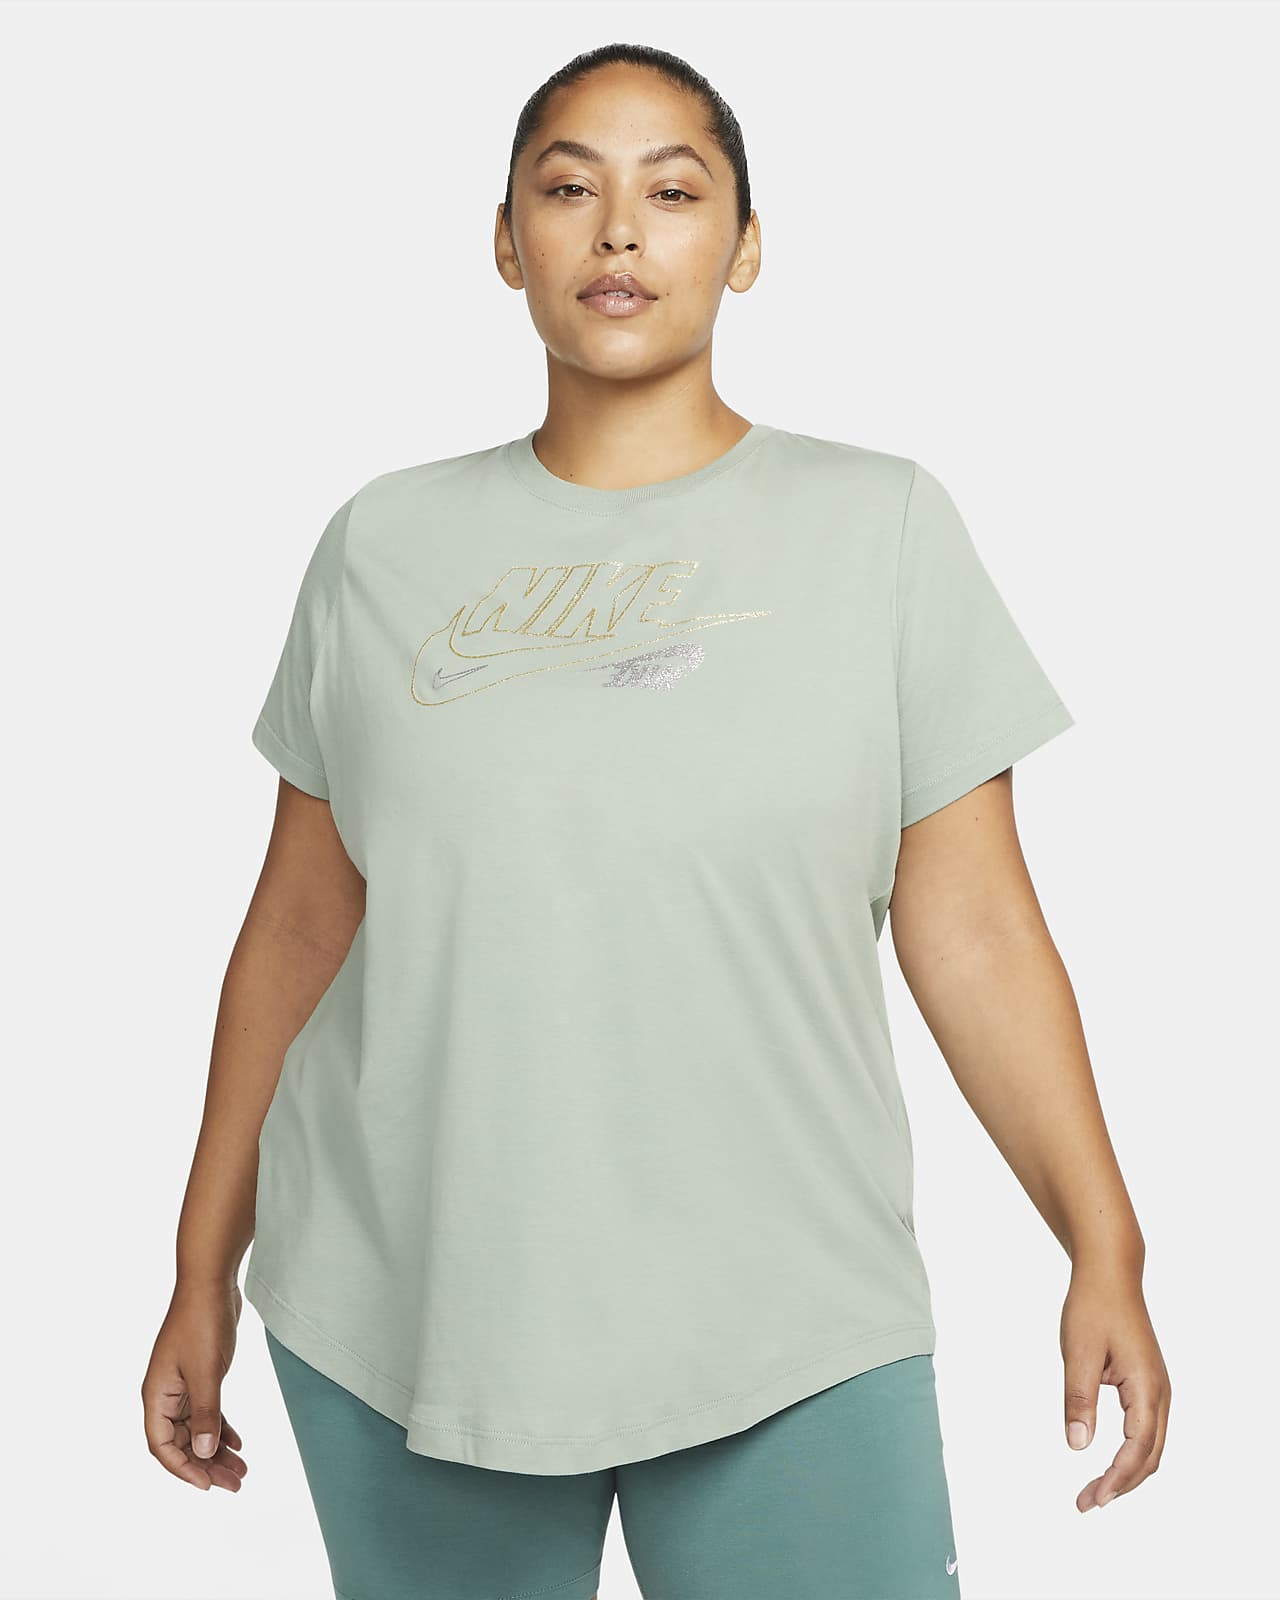 Hollow eksegese madras Nike Sportswear Women's Glitter T-Shirt (Plus Size). Nike.com